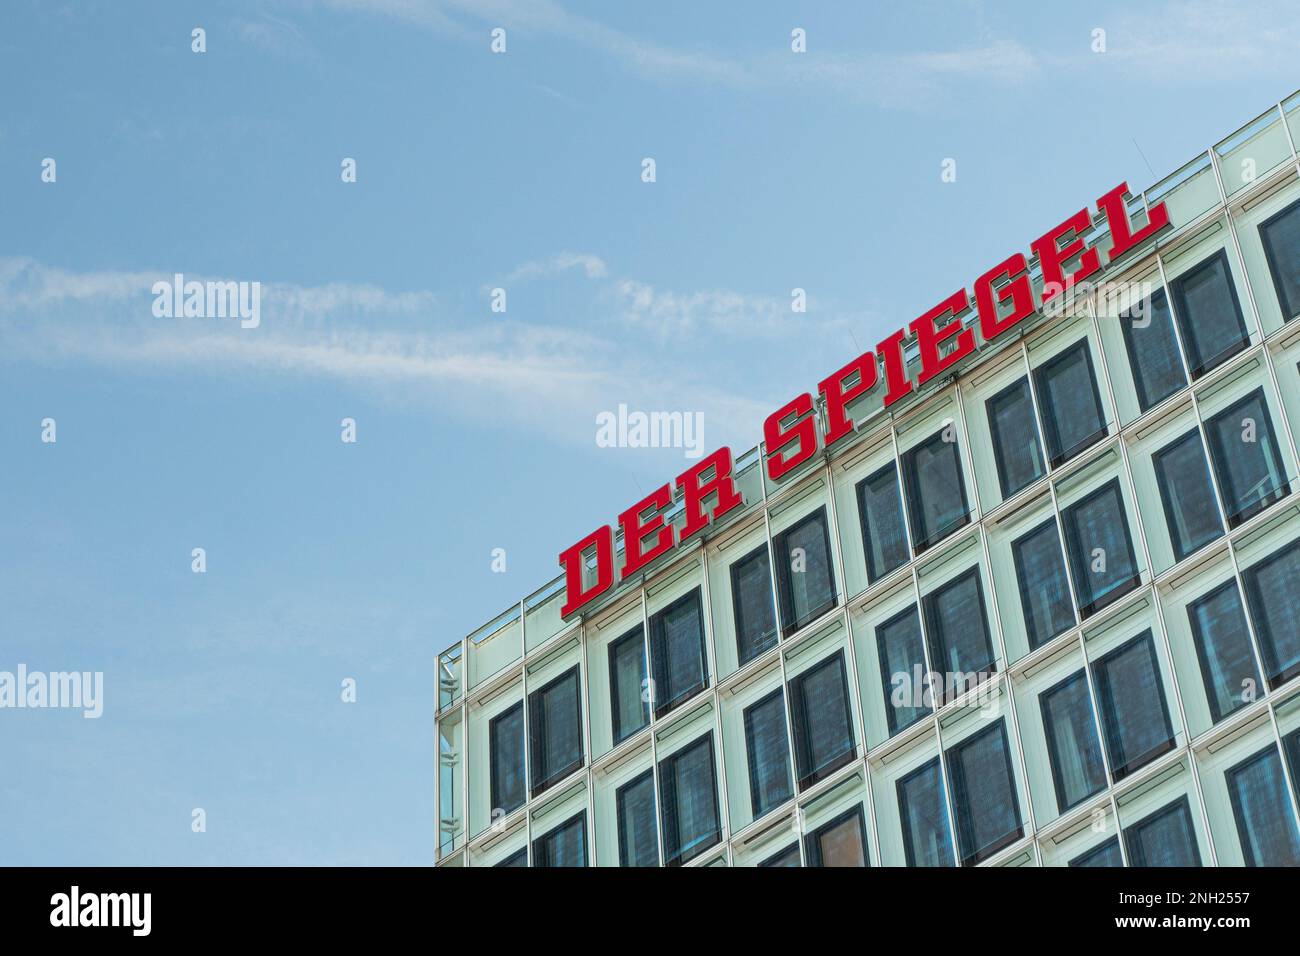 Der Spiegel ist eine deutsche Wochenzeitung, die in Hamburg veröffentlicht wird. Es ist eine der größten Nachrichtenwochen Europas mit einem wöchentlichen Zirku Stockfoto